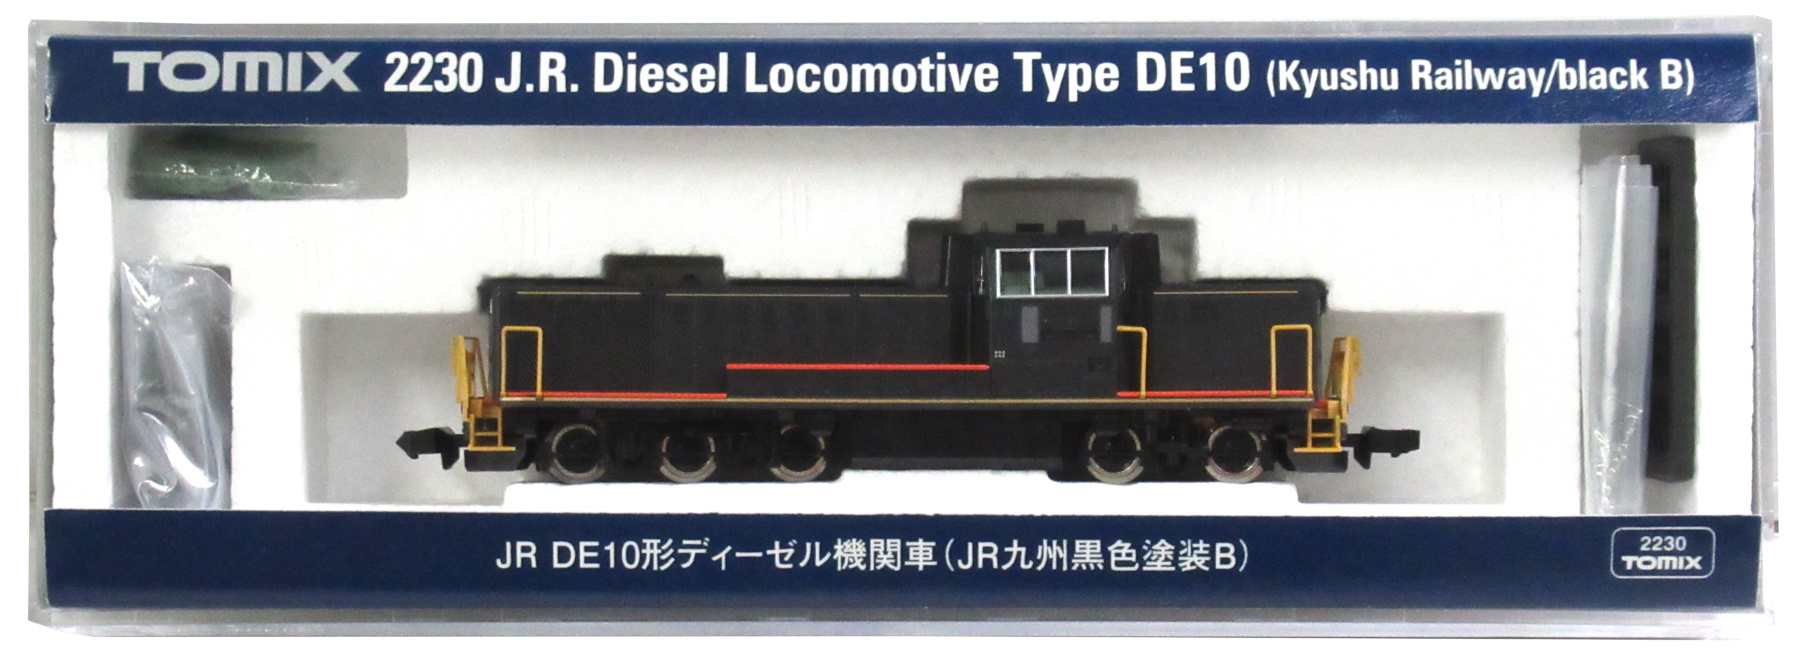 公式]鉄道模型(JR・国鉄 形式別(N)、ディーゼル機関車、DE10)カテゴリ